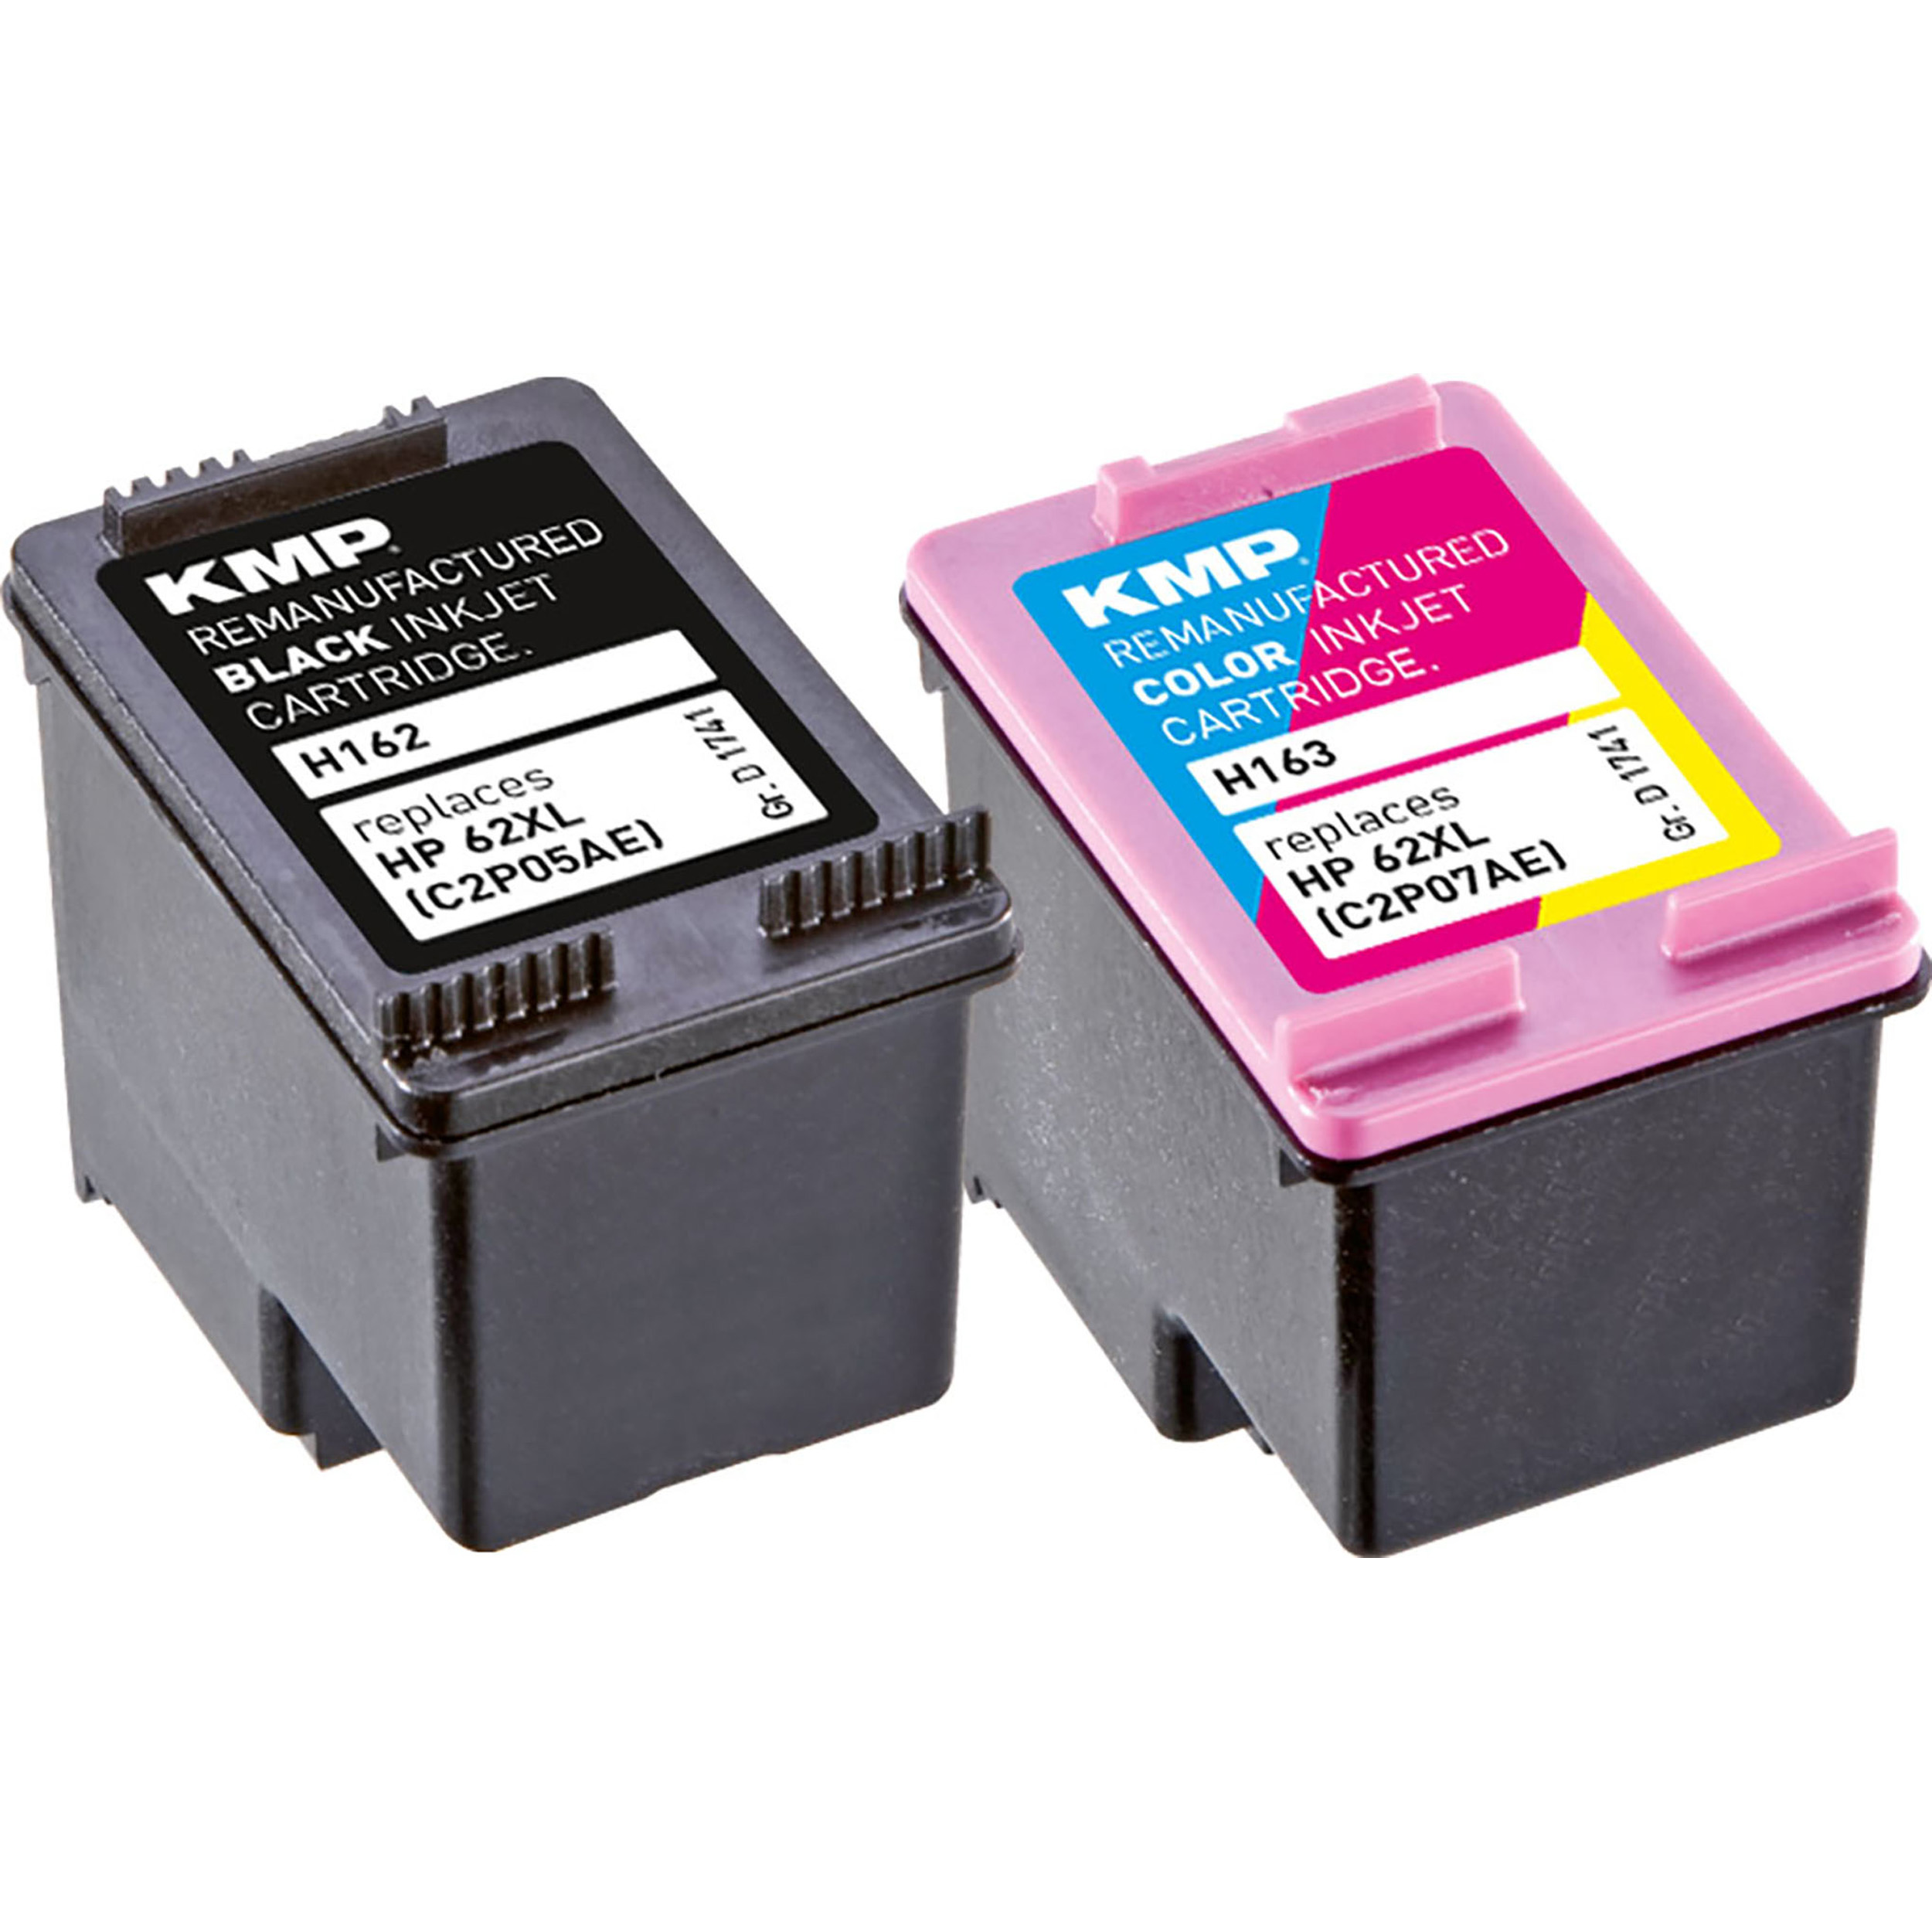 KMP Tintenpatrone für HP 62XL Cartridge C2P07AE) (C2P05AE, Multipack Ink C2P07AE) BK,C,M,Y 3-farbig (C2P05AE, schwarz